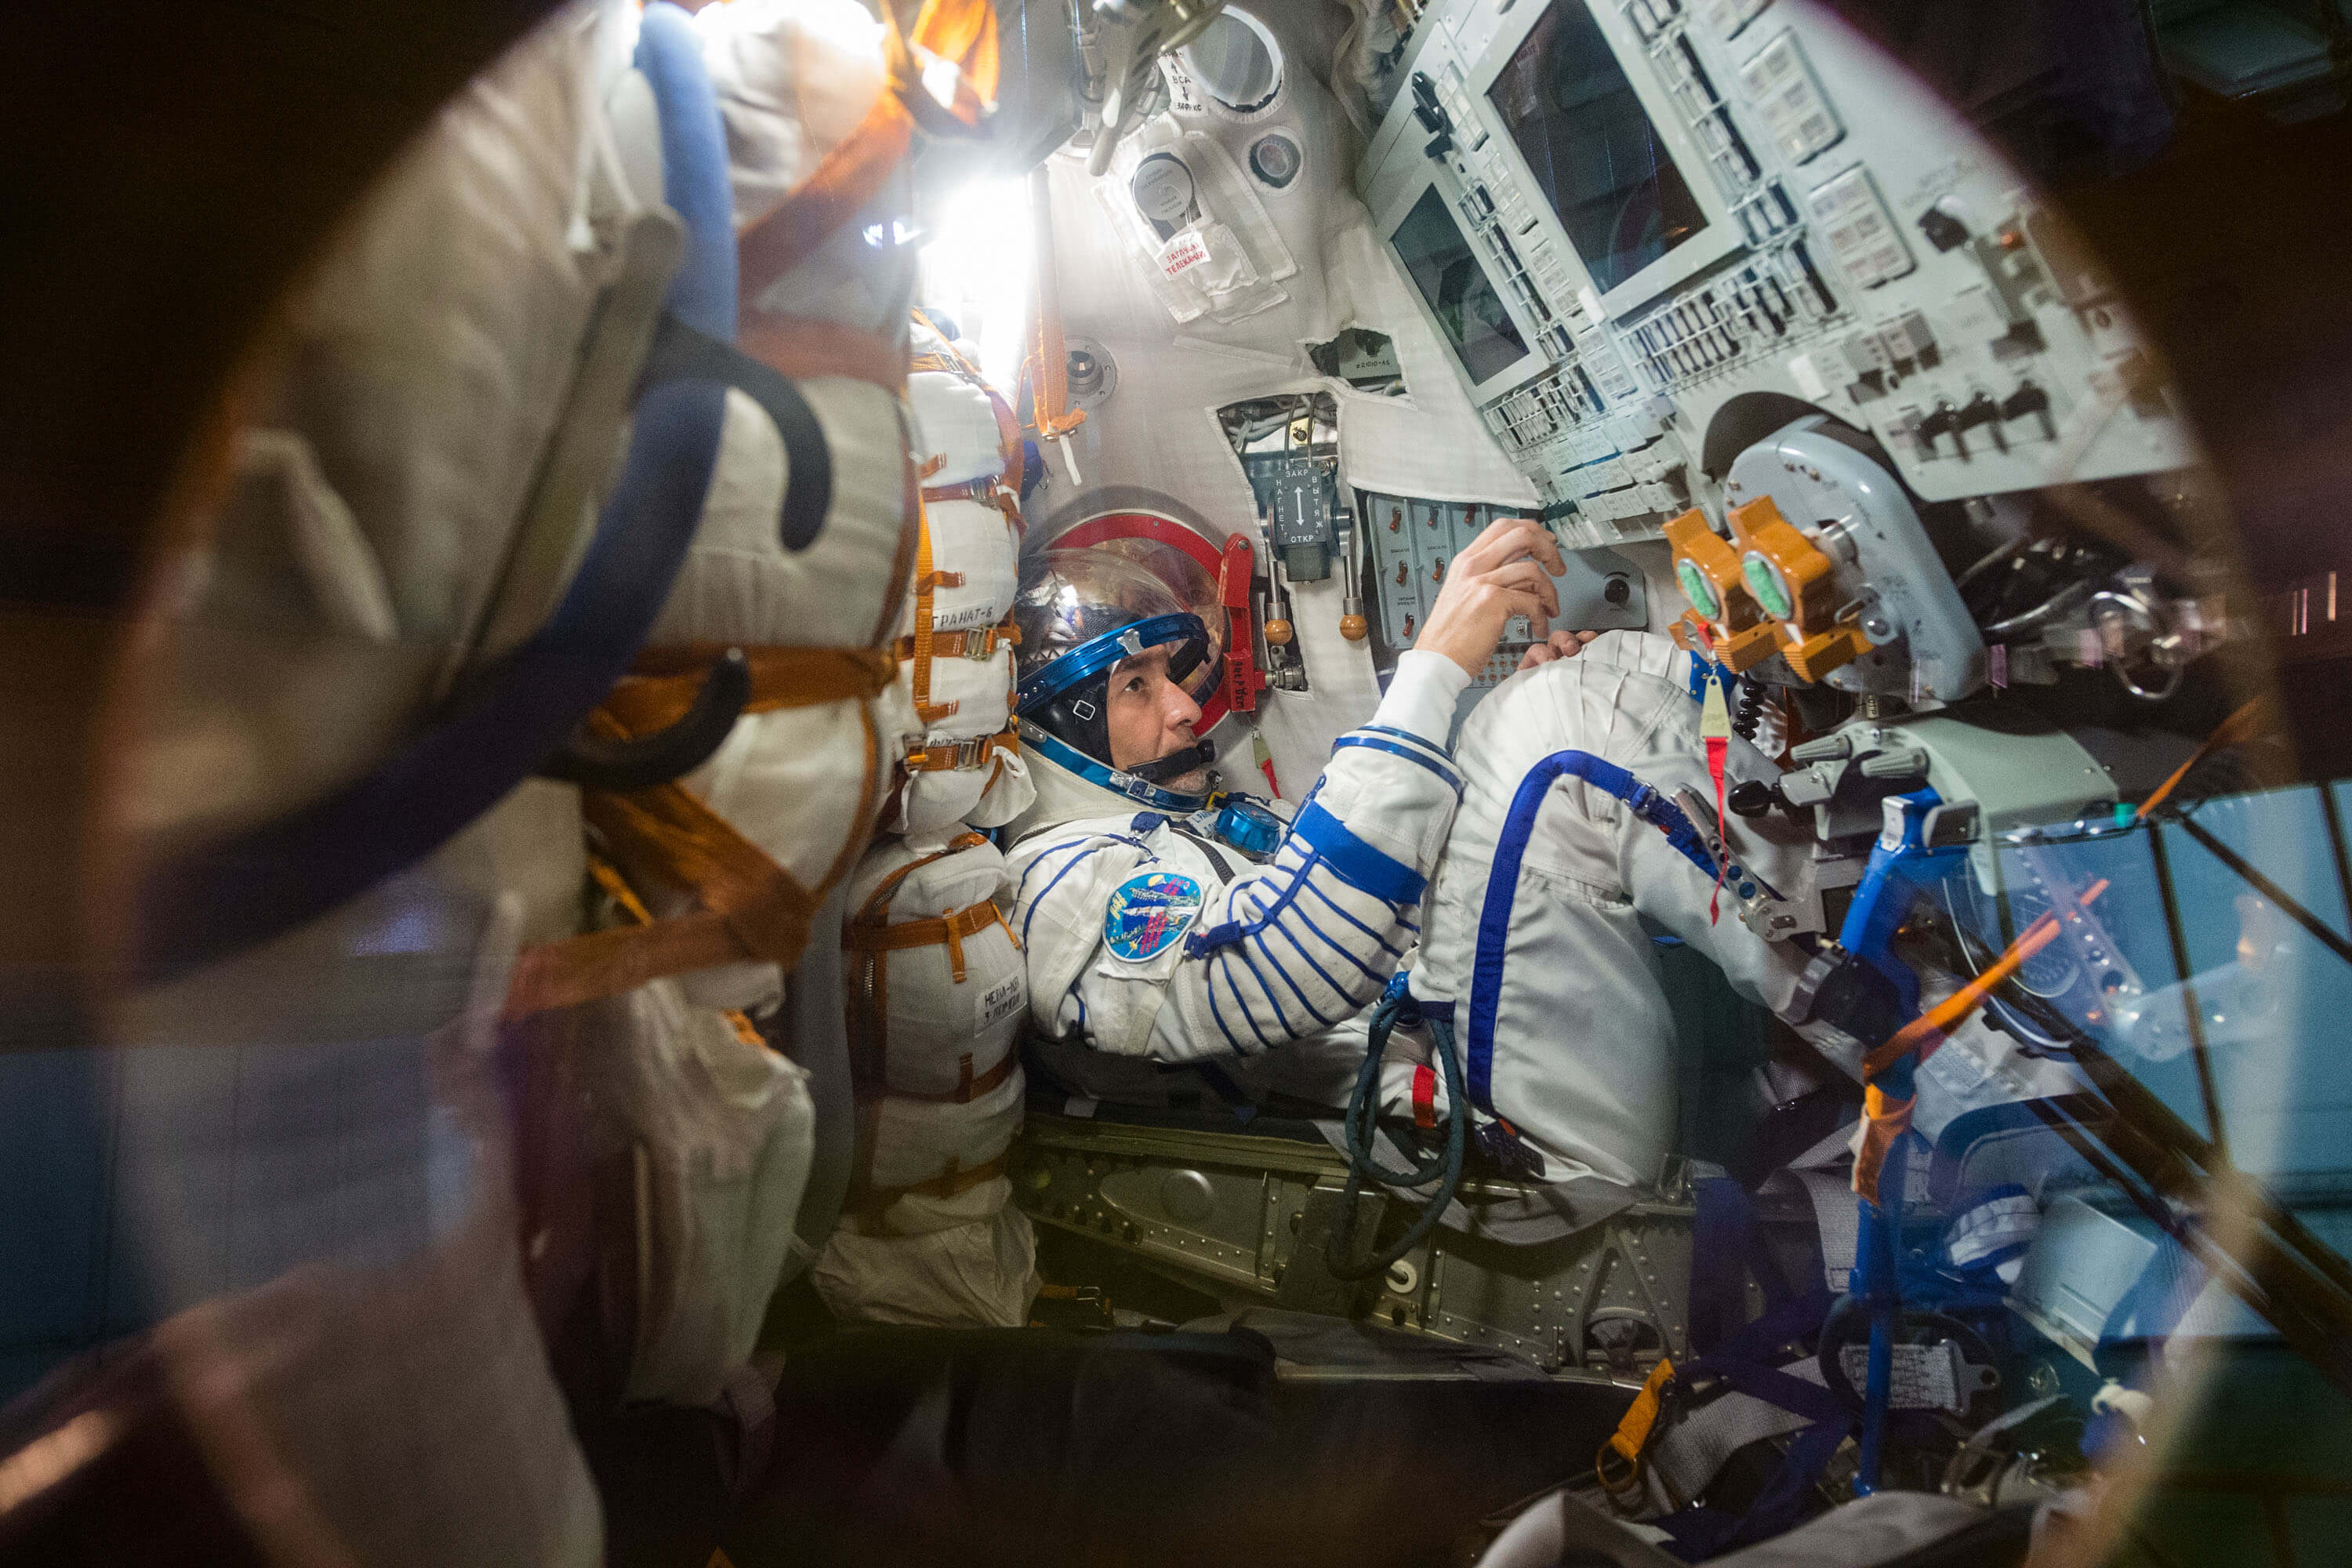 Российские космонавты находящиеся в космосе. Кабина Crew Dragon и Союз. Союз МС кабина. Космический корабль Crew Dragon внутри. Космический корабль Союз МС внутри.